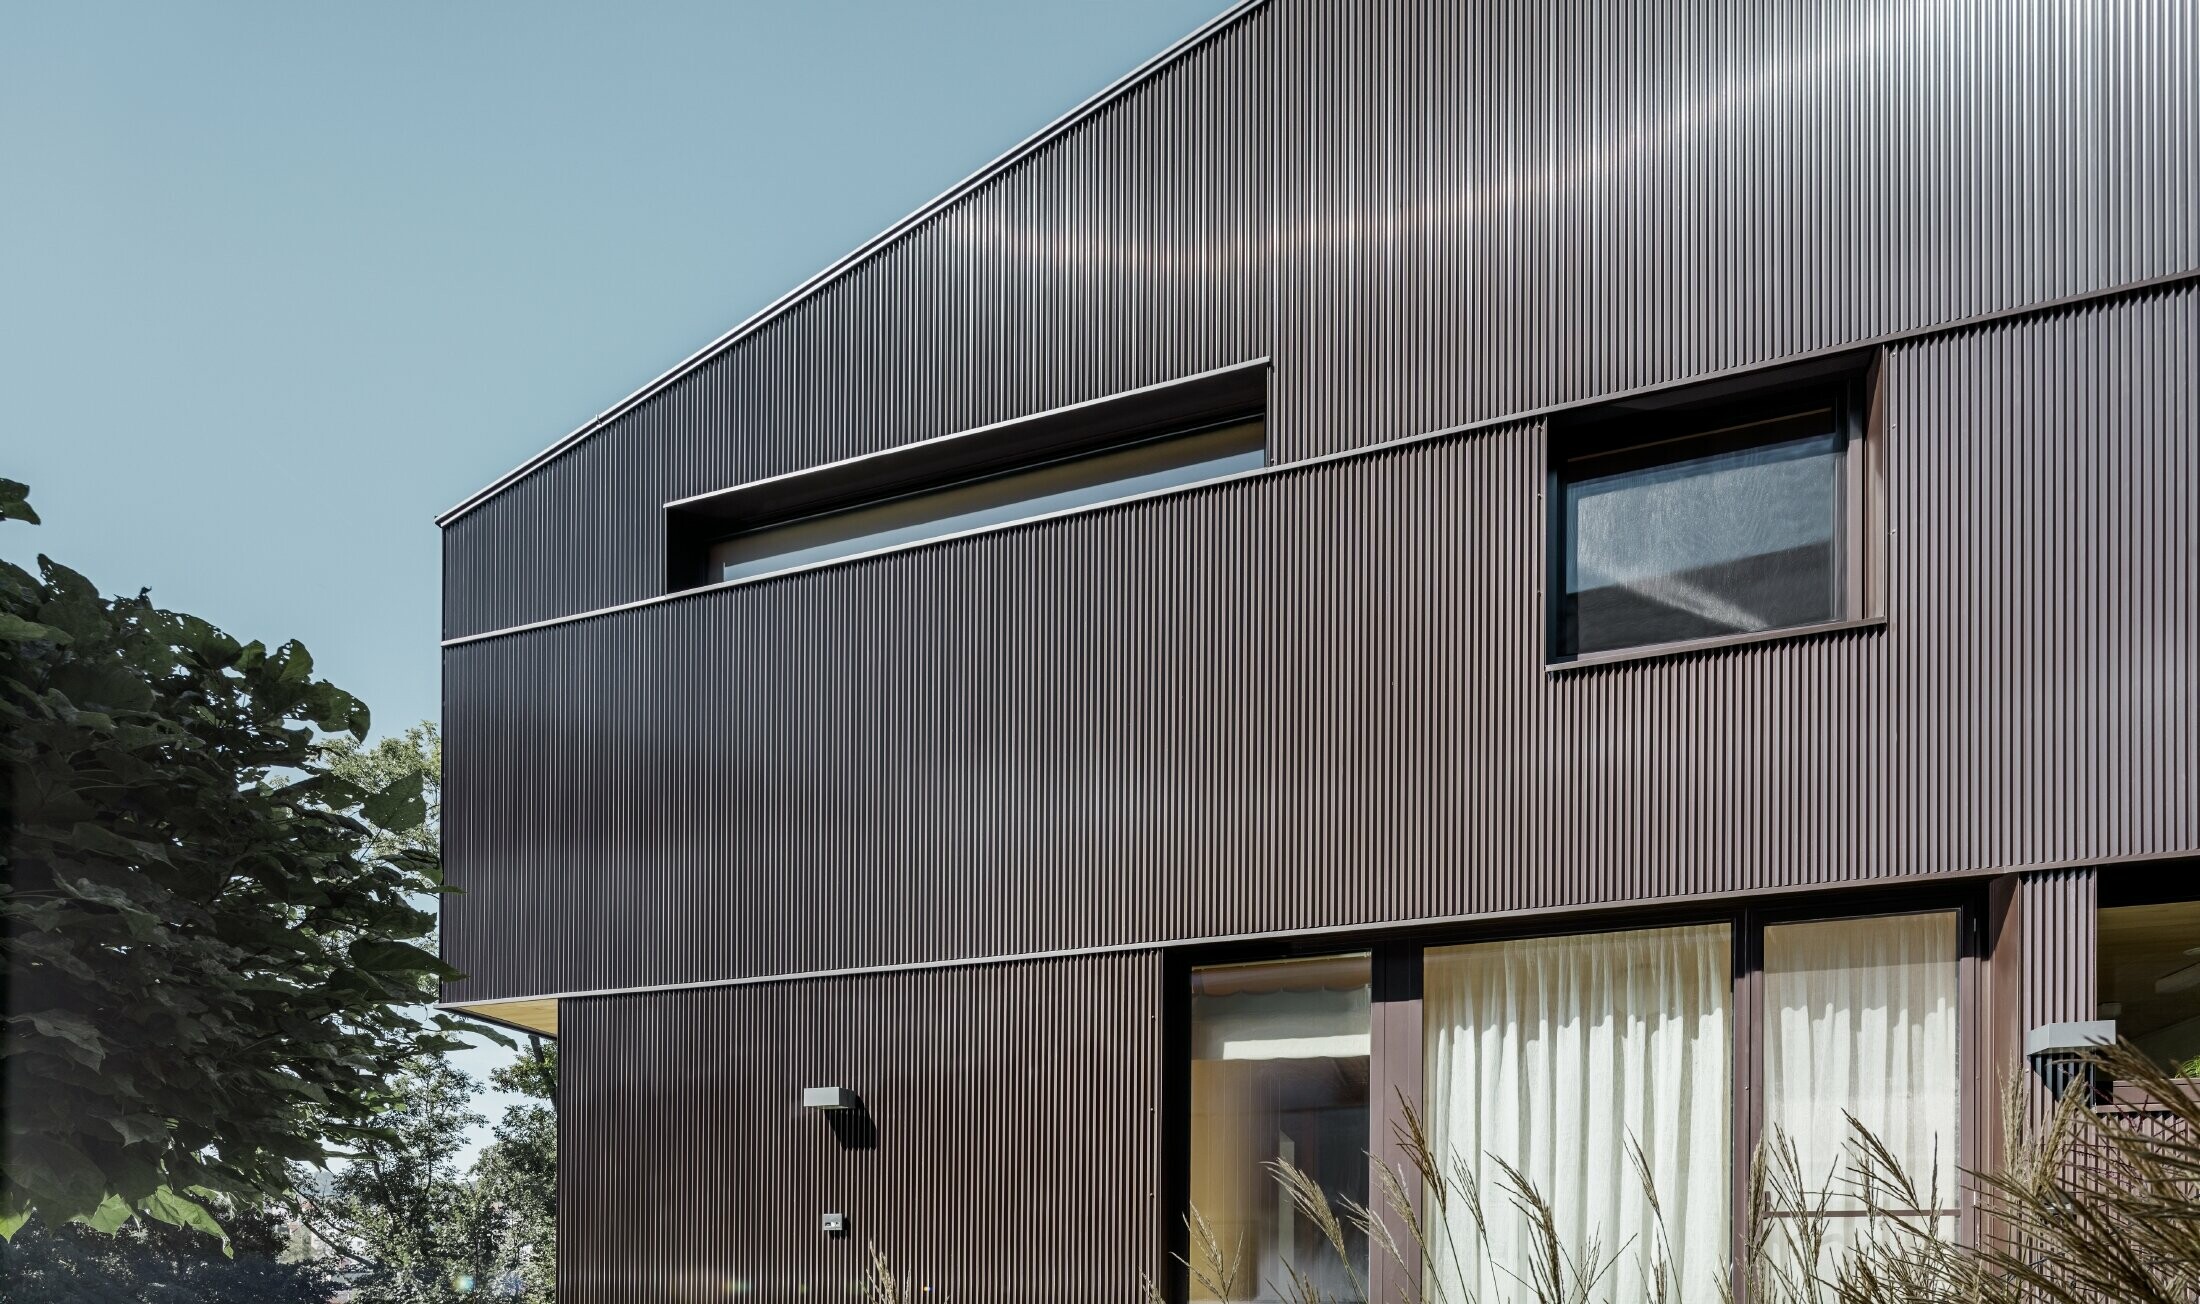 Modernt fristående hus med fasadbeklädnad från PREFA - brun sicksackprofil.